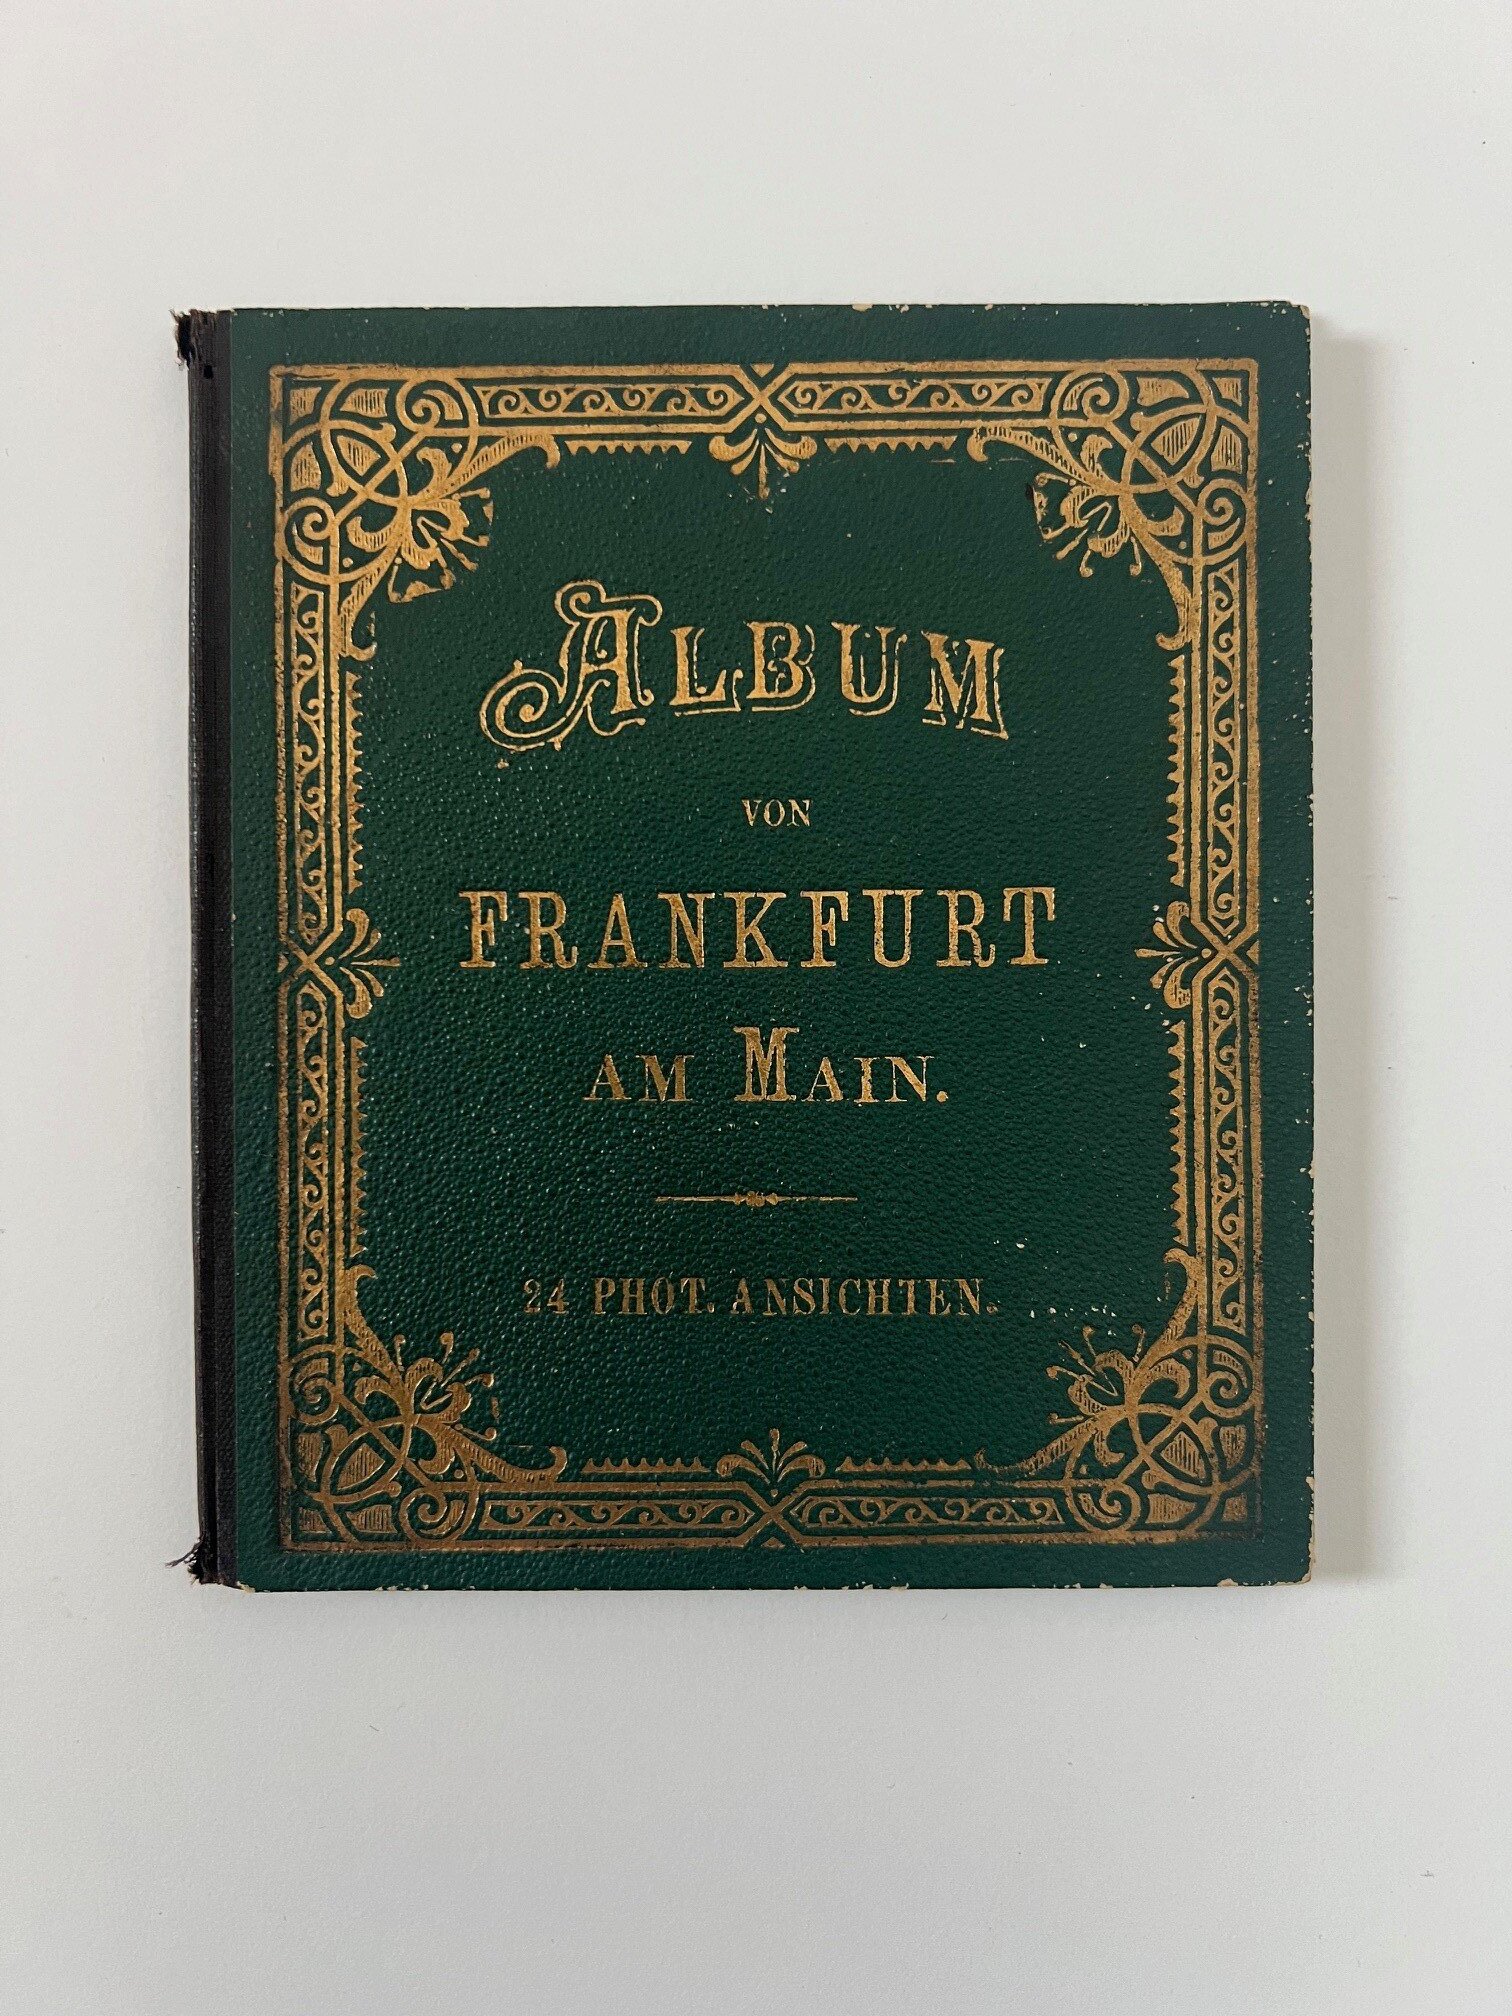 Unbekannter Hersteller, Album von Frankfurt am Main, 24 Lithographien als Leporello, ca. 1885. (Taunus-Rhein-Main - Regionalgeschichtliche Sammlung Dr. Stefan Naas CC BY-NC-SA)